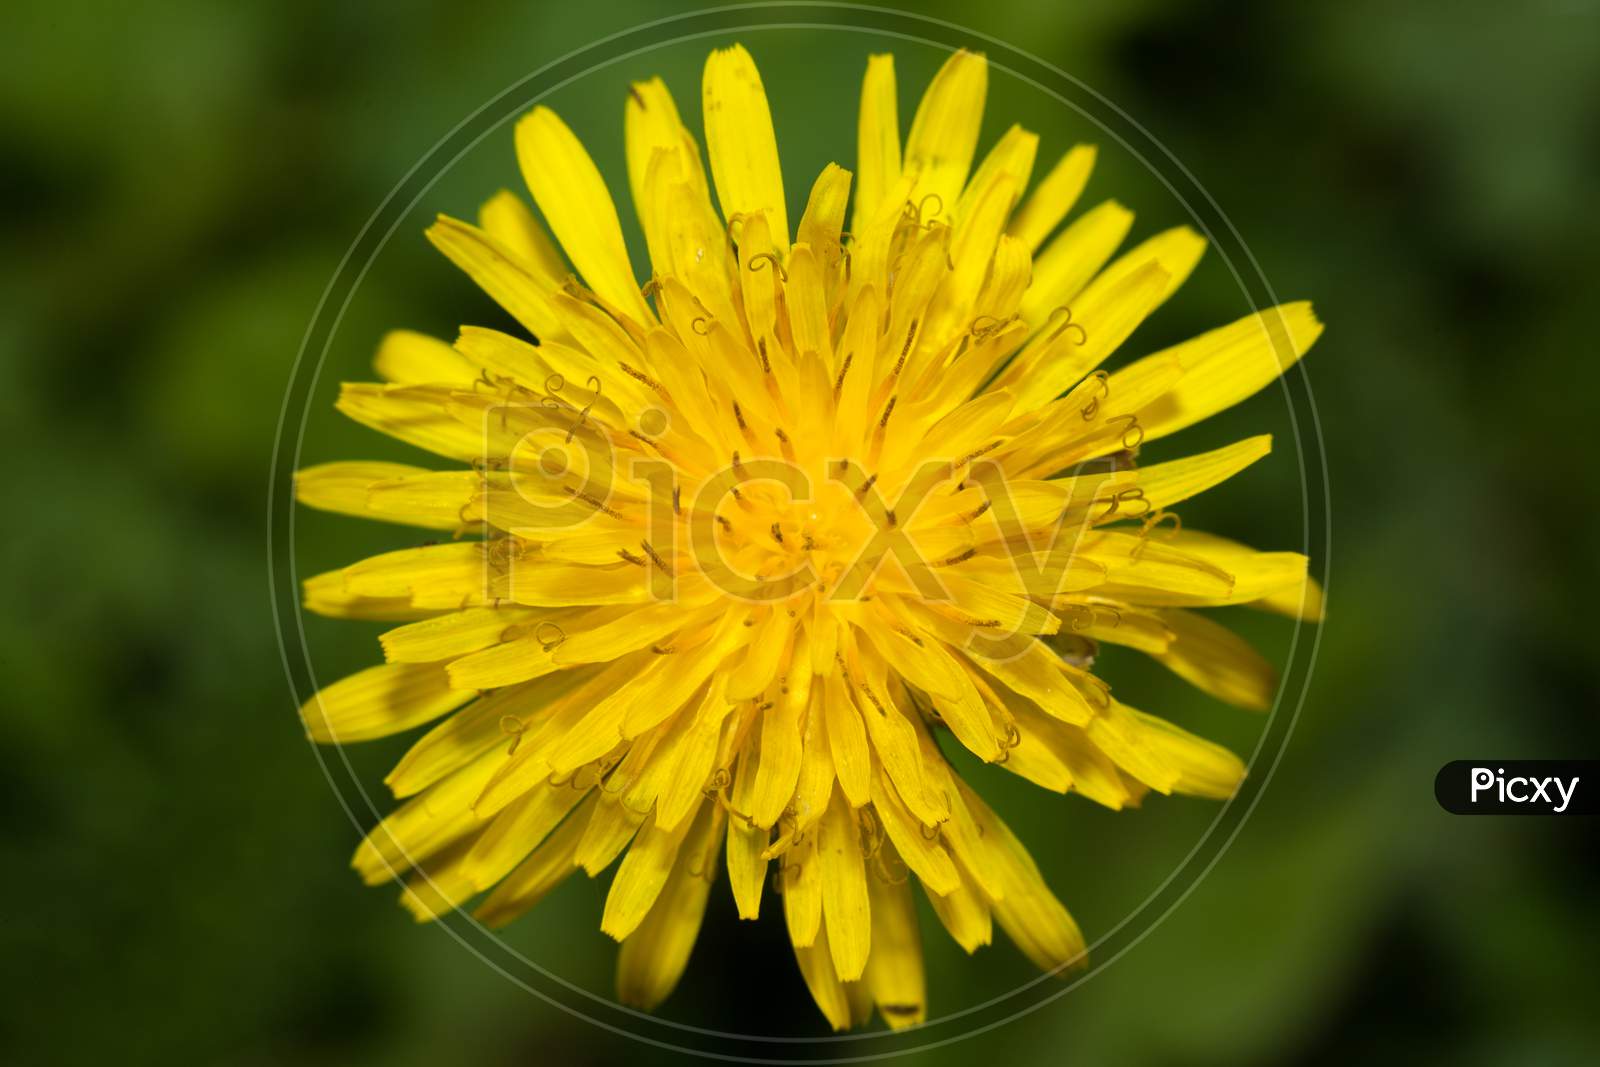 Close Up Of Dandelion Flower